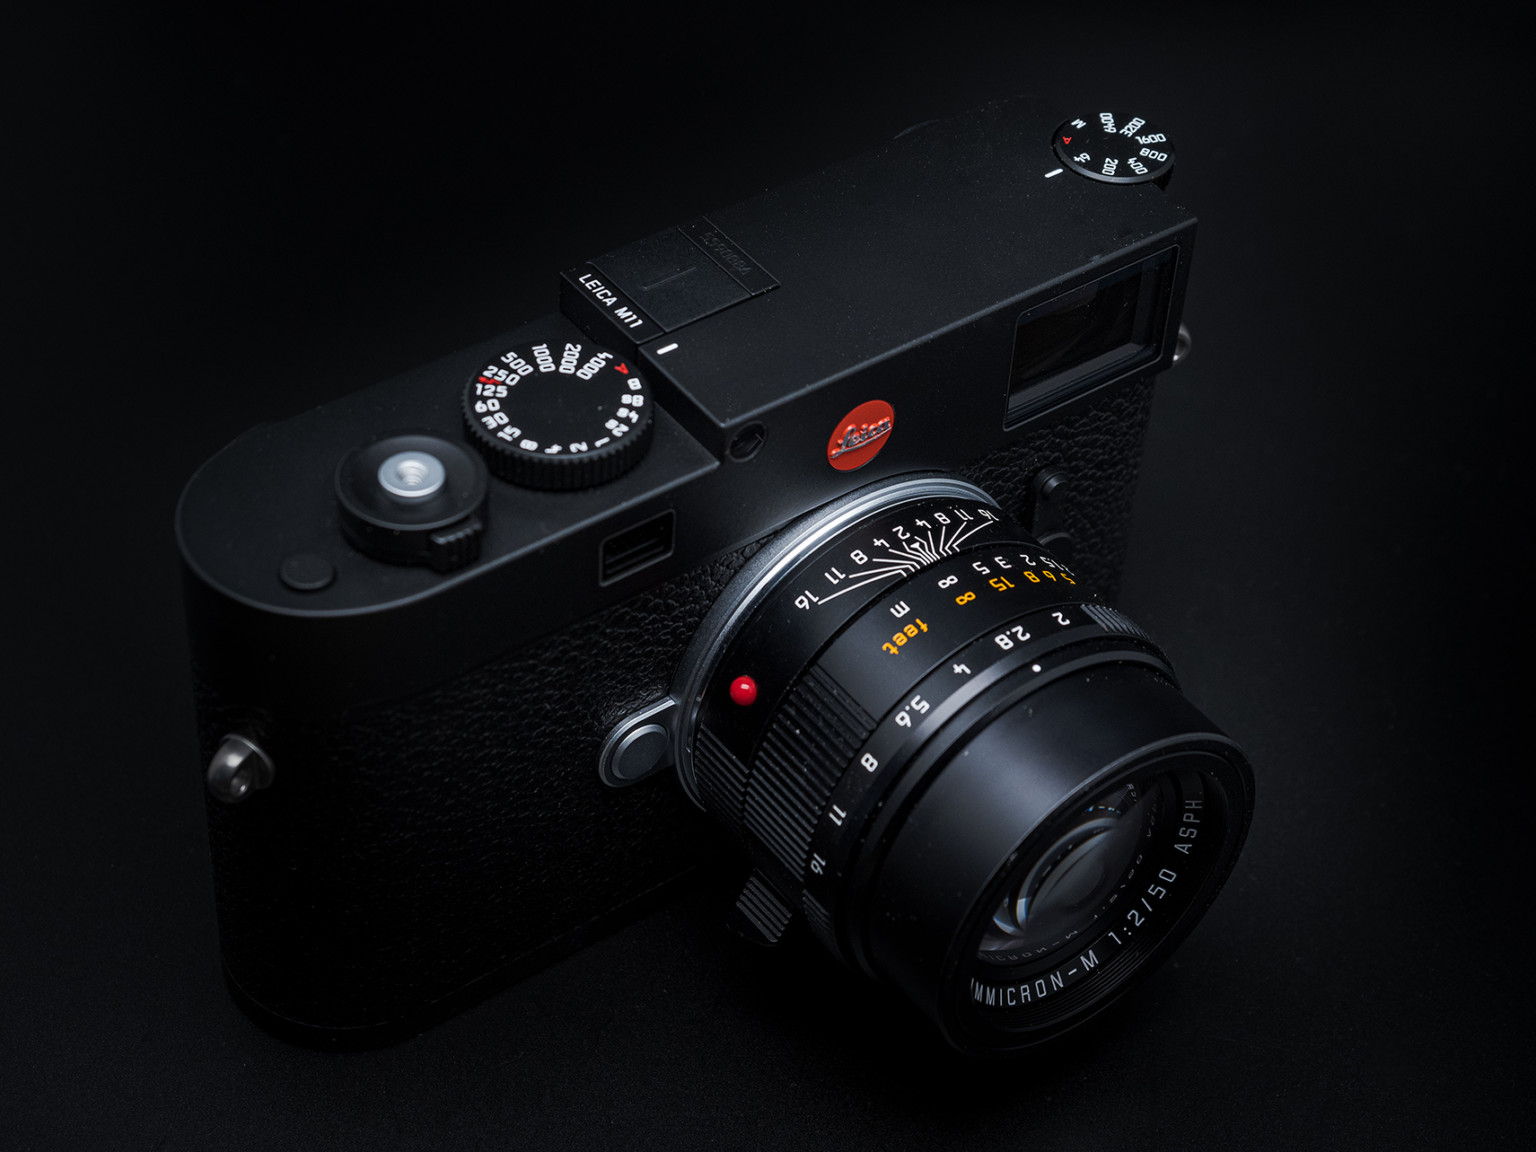 Hình ảnh Leica M11 được thực hiện bởi nhiếp ảnh gia Matt Williams